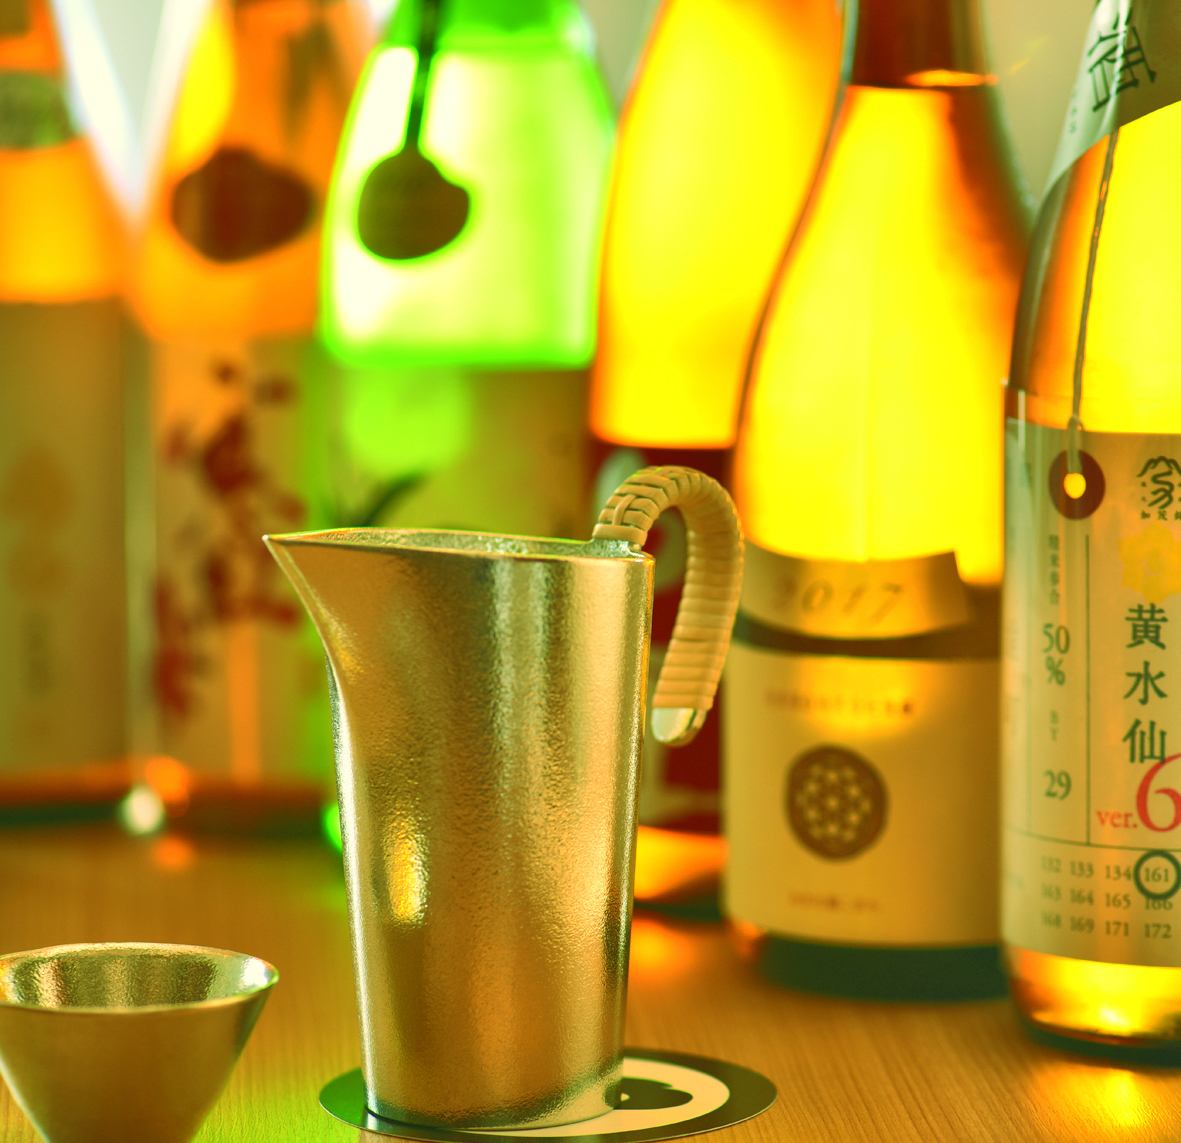 我们提供各种精心挑选的日本酒。